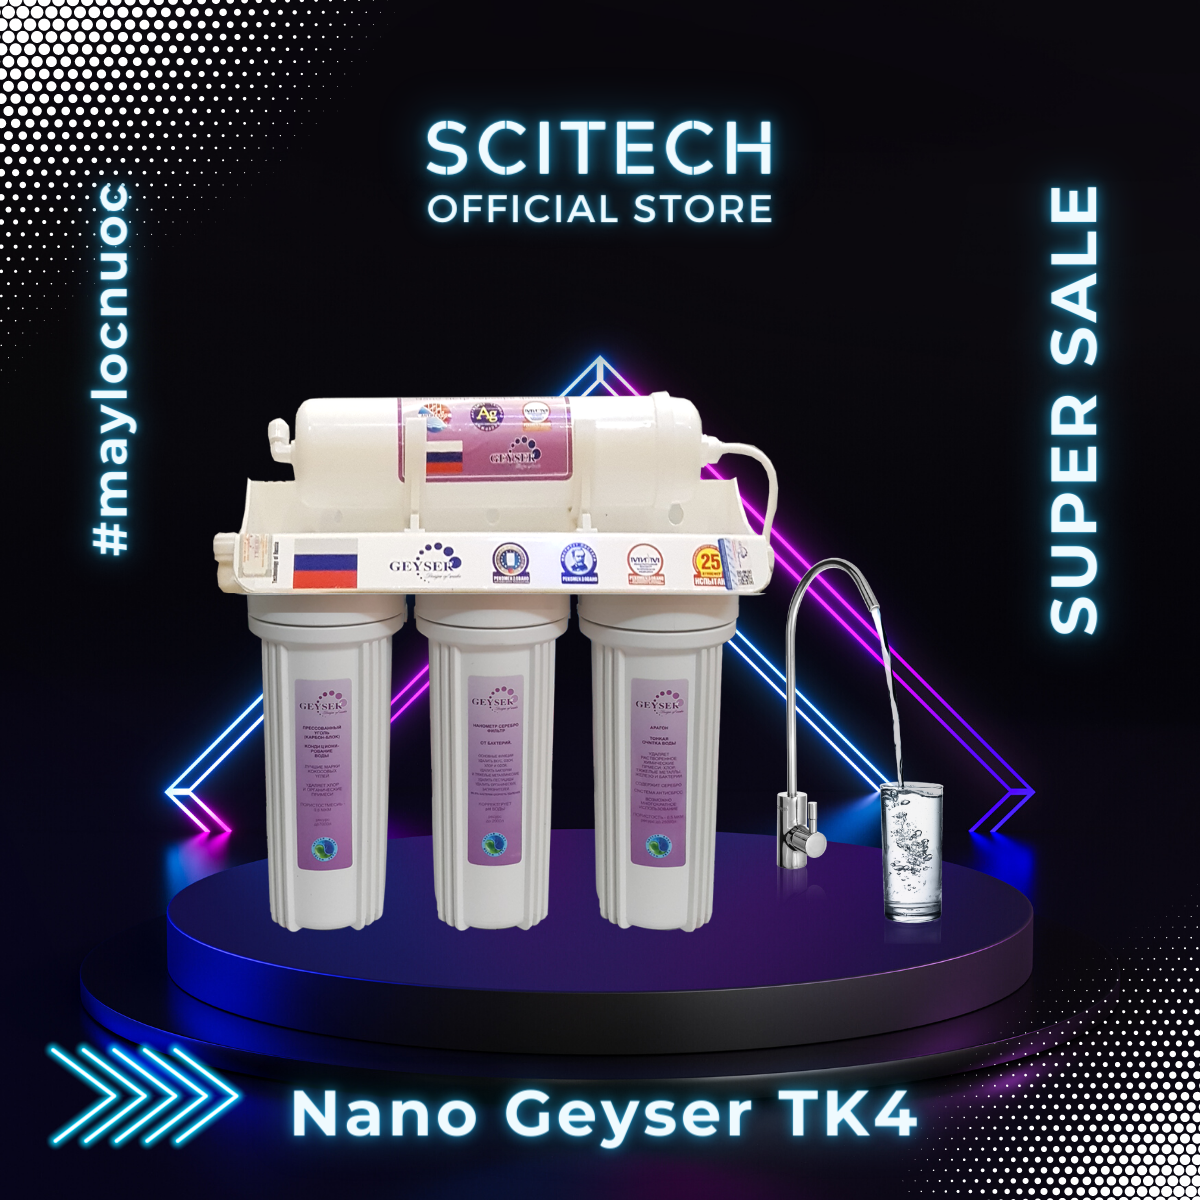 Máy lọc nước Nano TK by Scitech (Không dùng điện, không nước thải, 3 đến 9 cấp lọc) - Hàng chính hãng